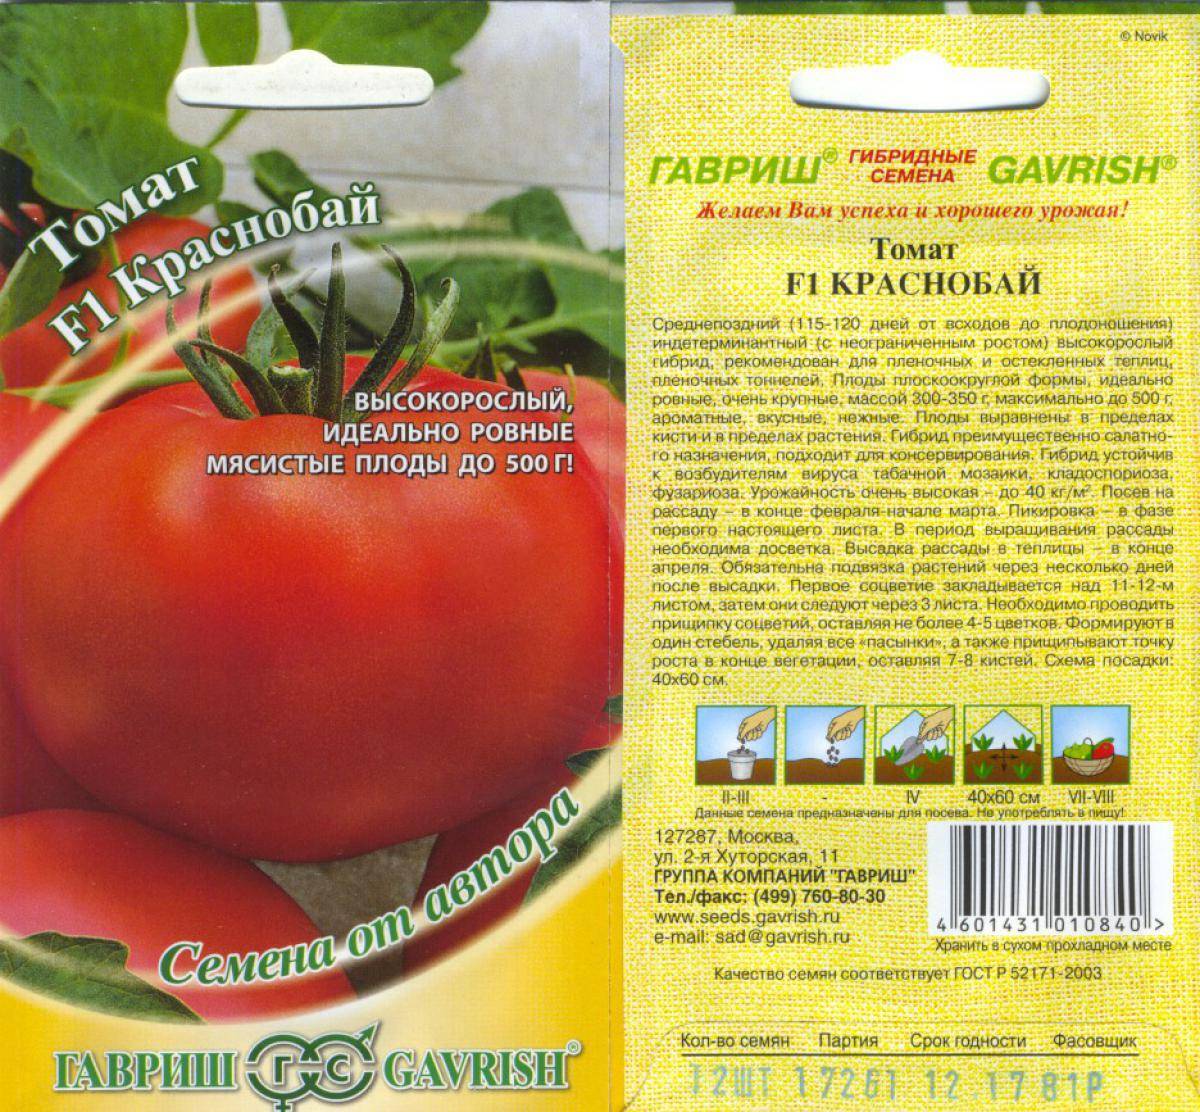 Характеристика и подробное описание томатов самара, советы по выращиванию